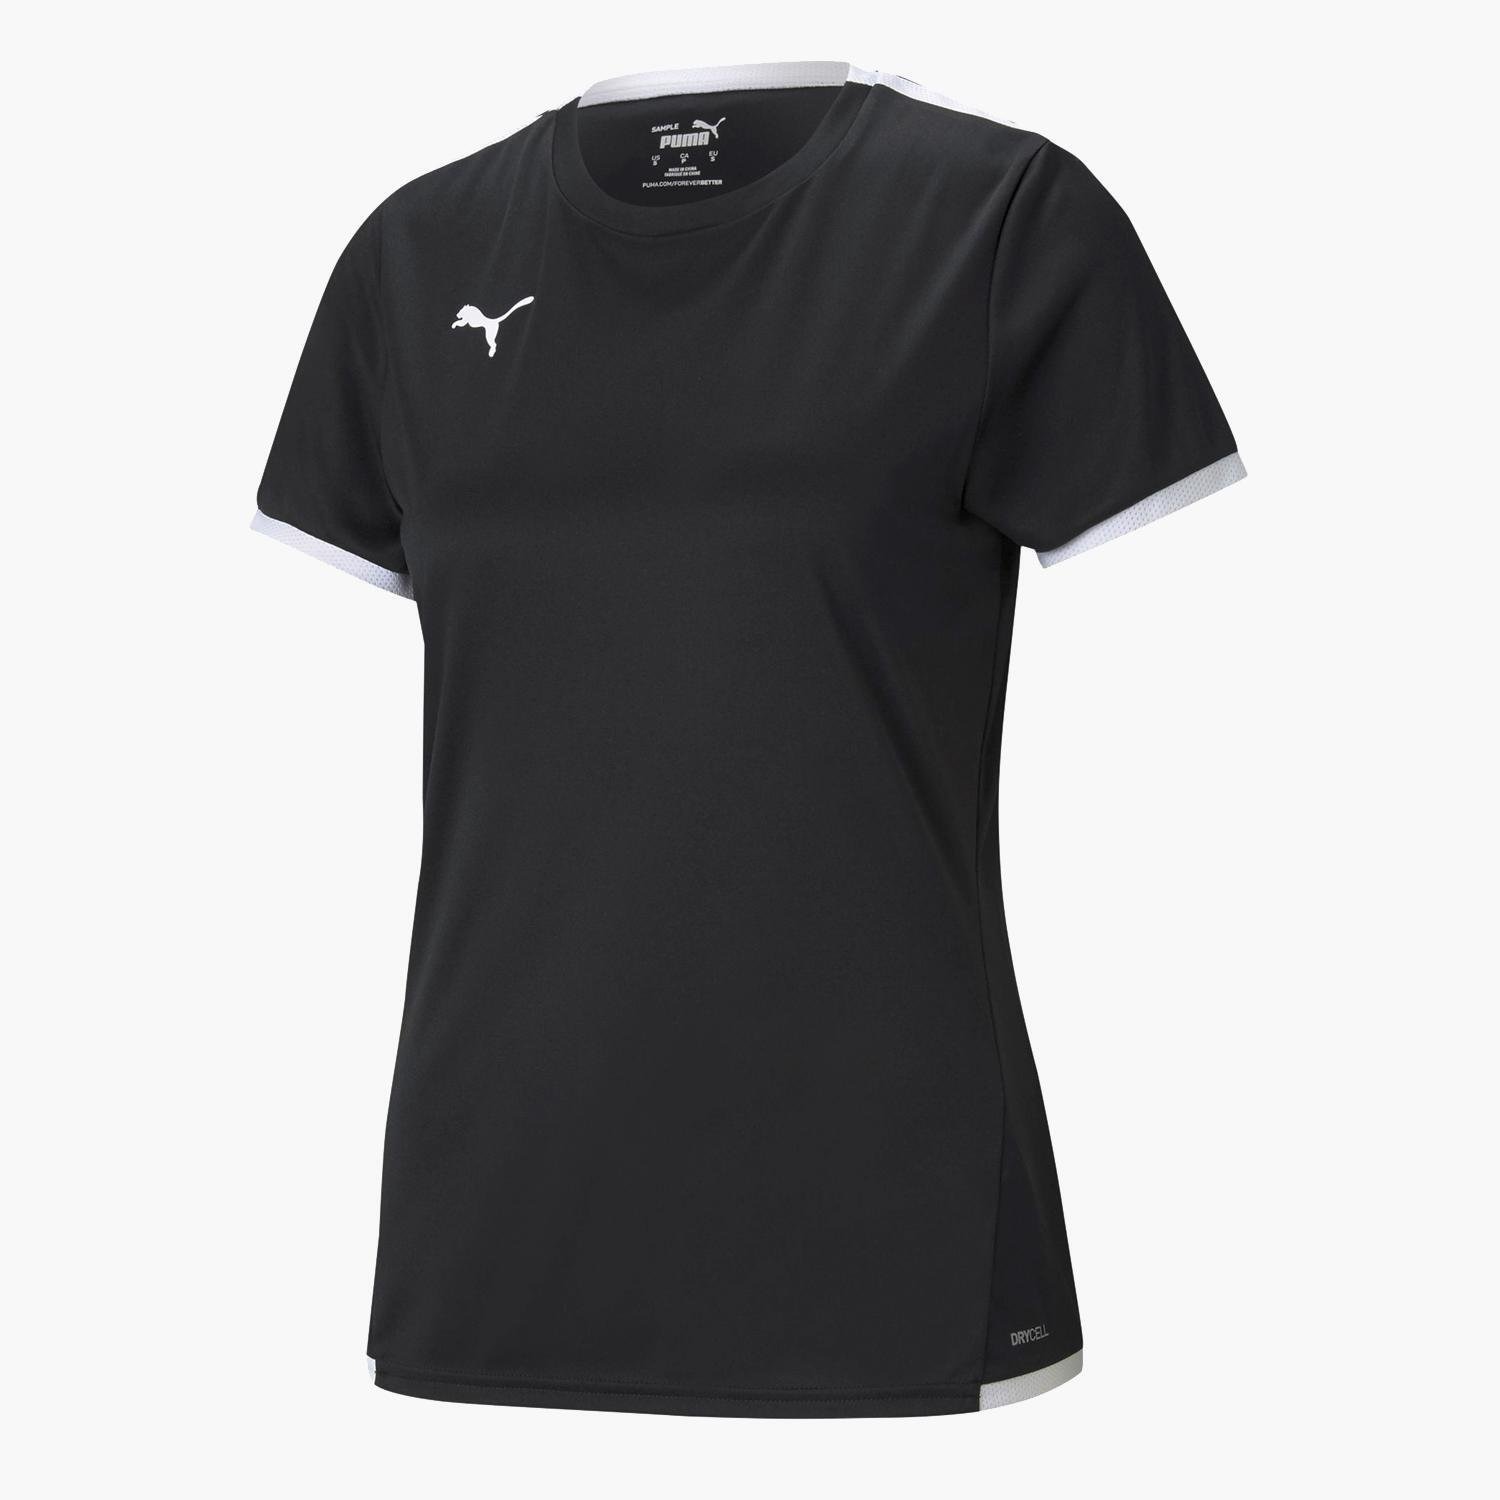 Puma Teamliga Jersey dames voetbal T-shirt - Zwart - Maat M